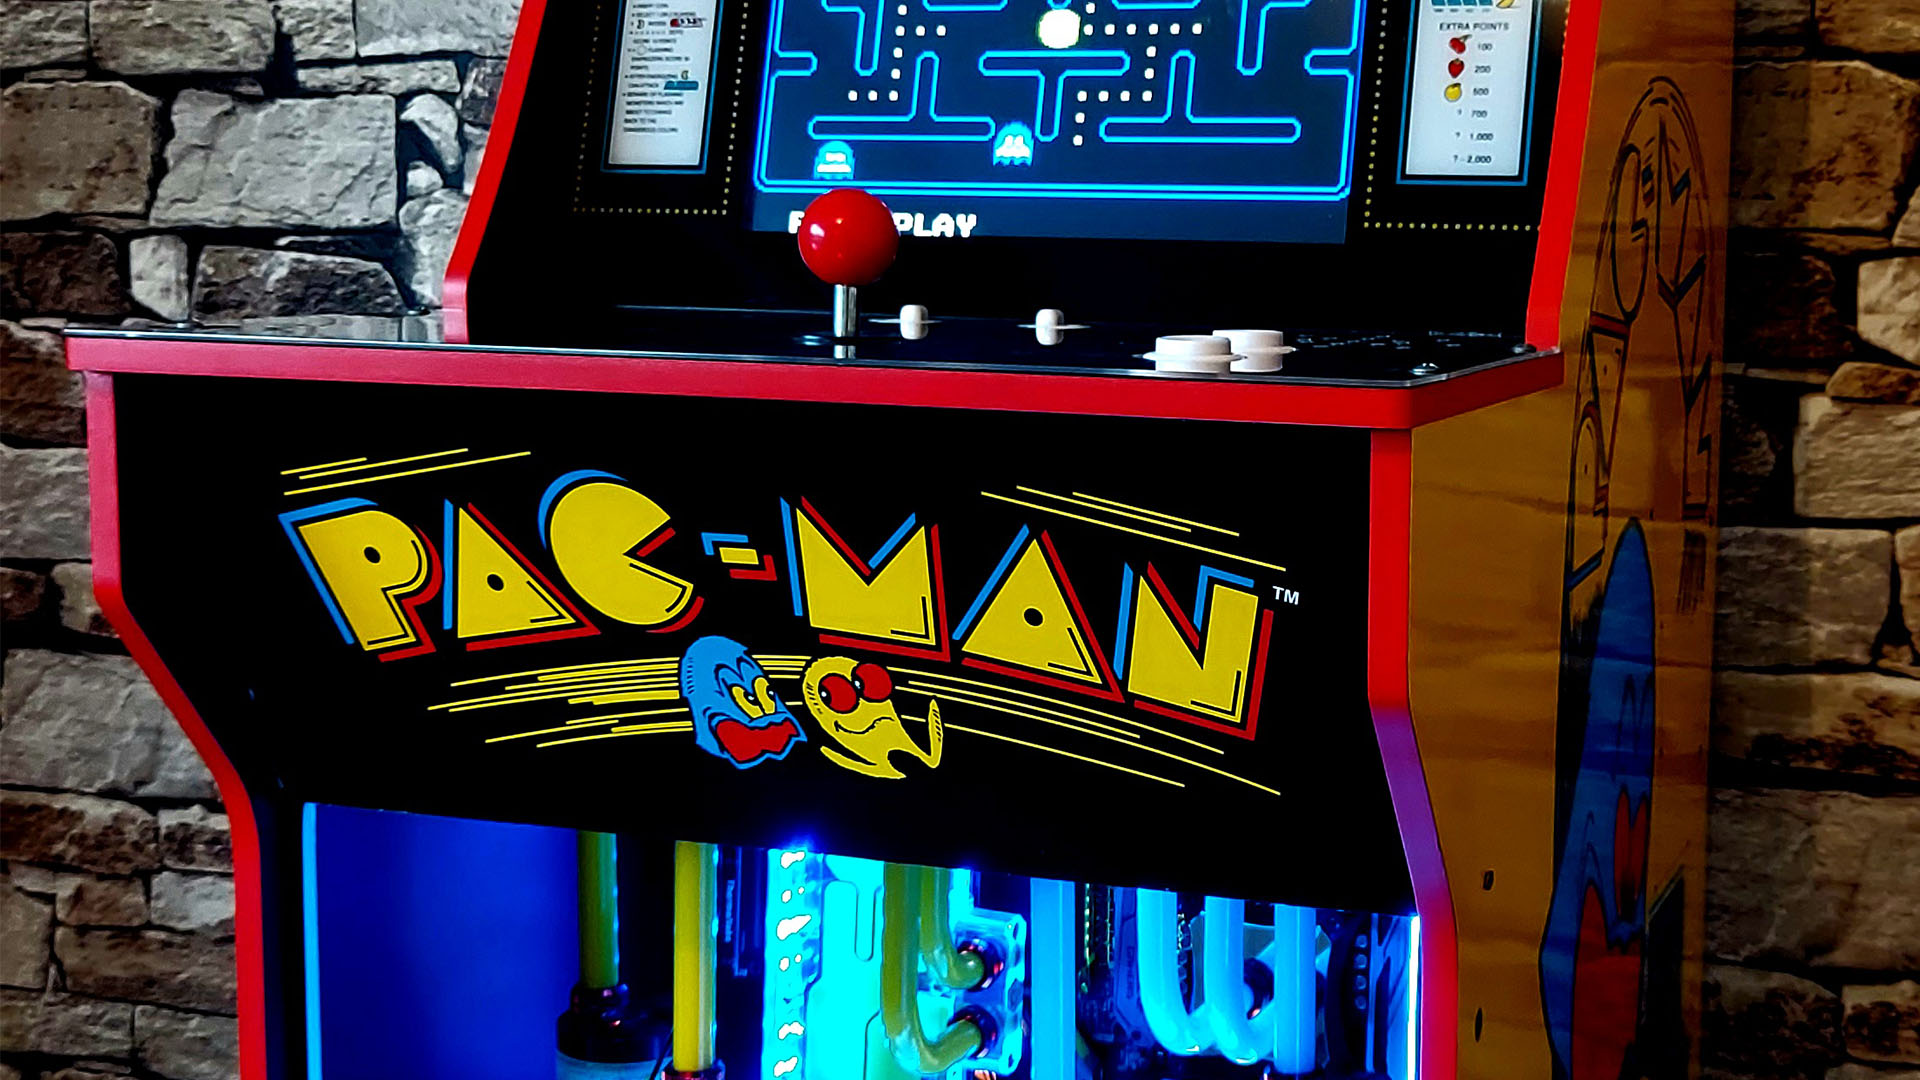 Bu oyun bilgisayarı aynı zamanda Pac-Man atari dolabı olarak da kullanılabilir